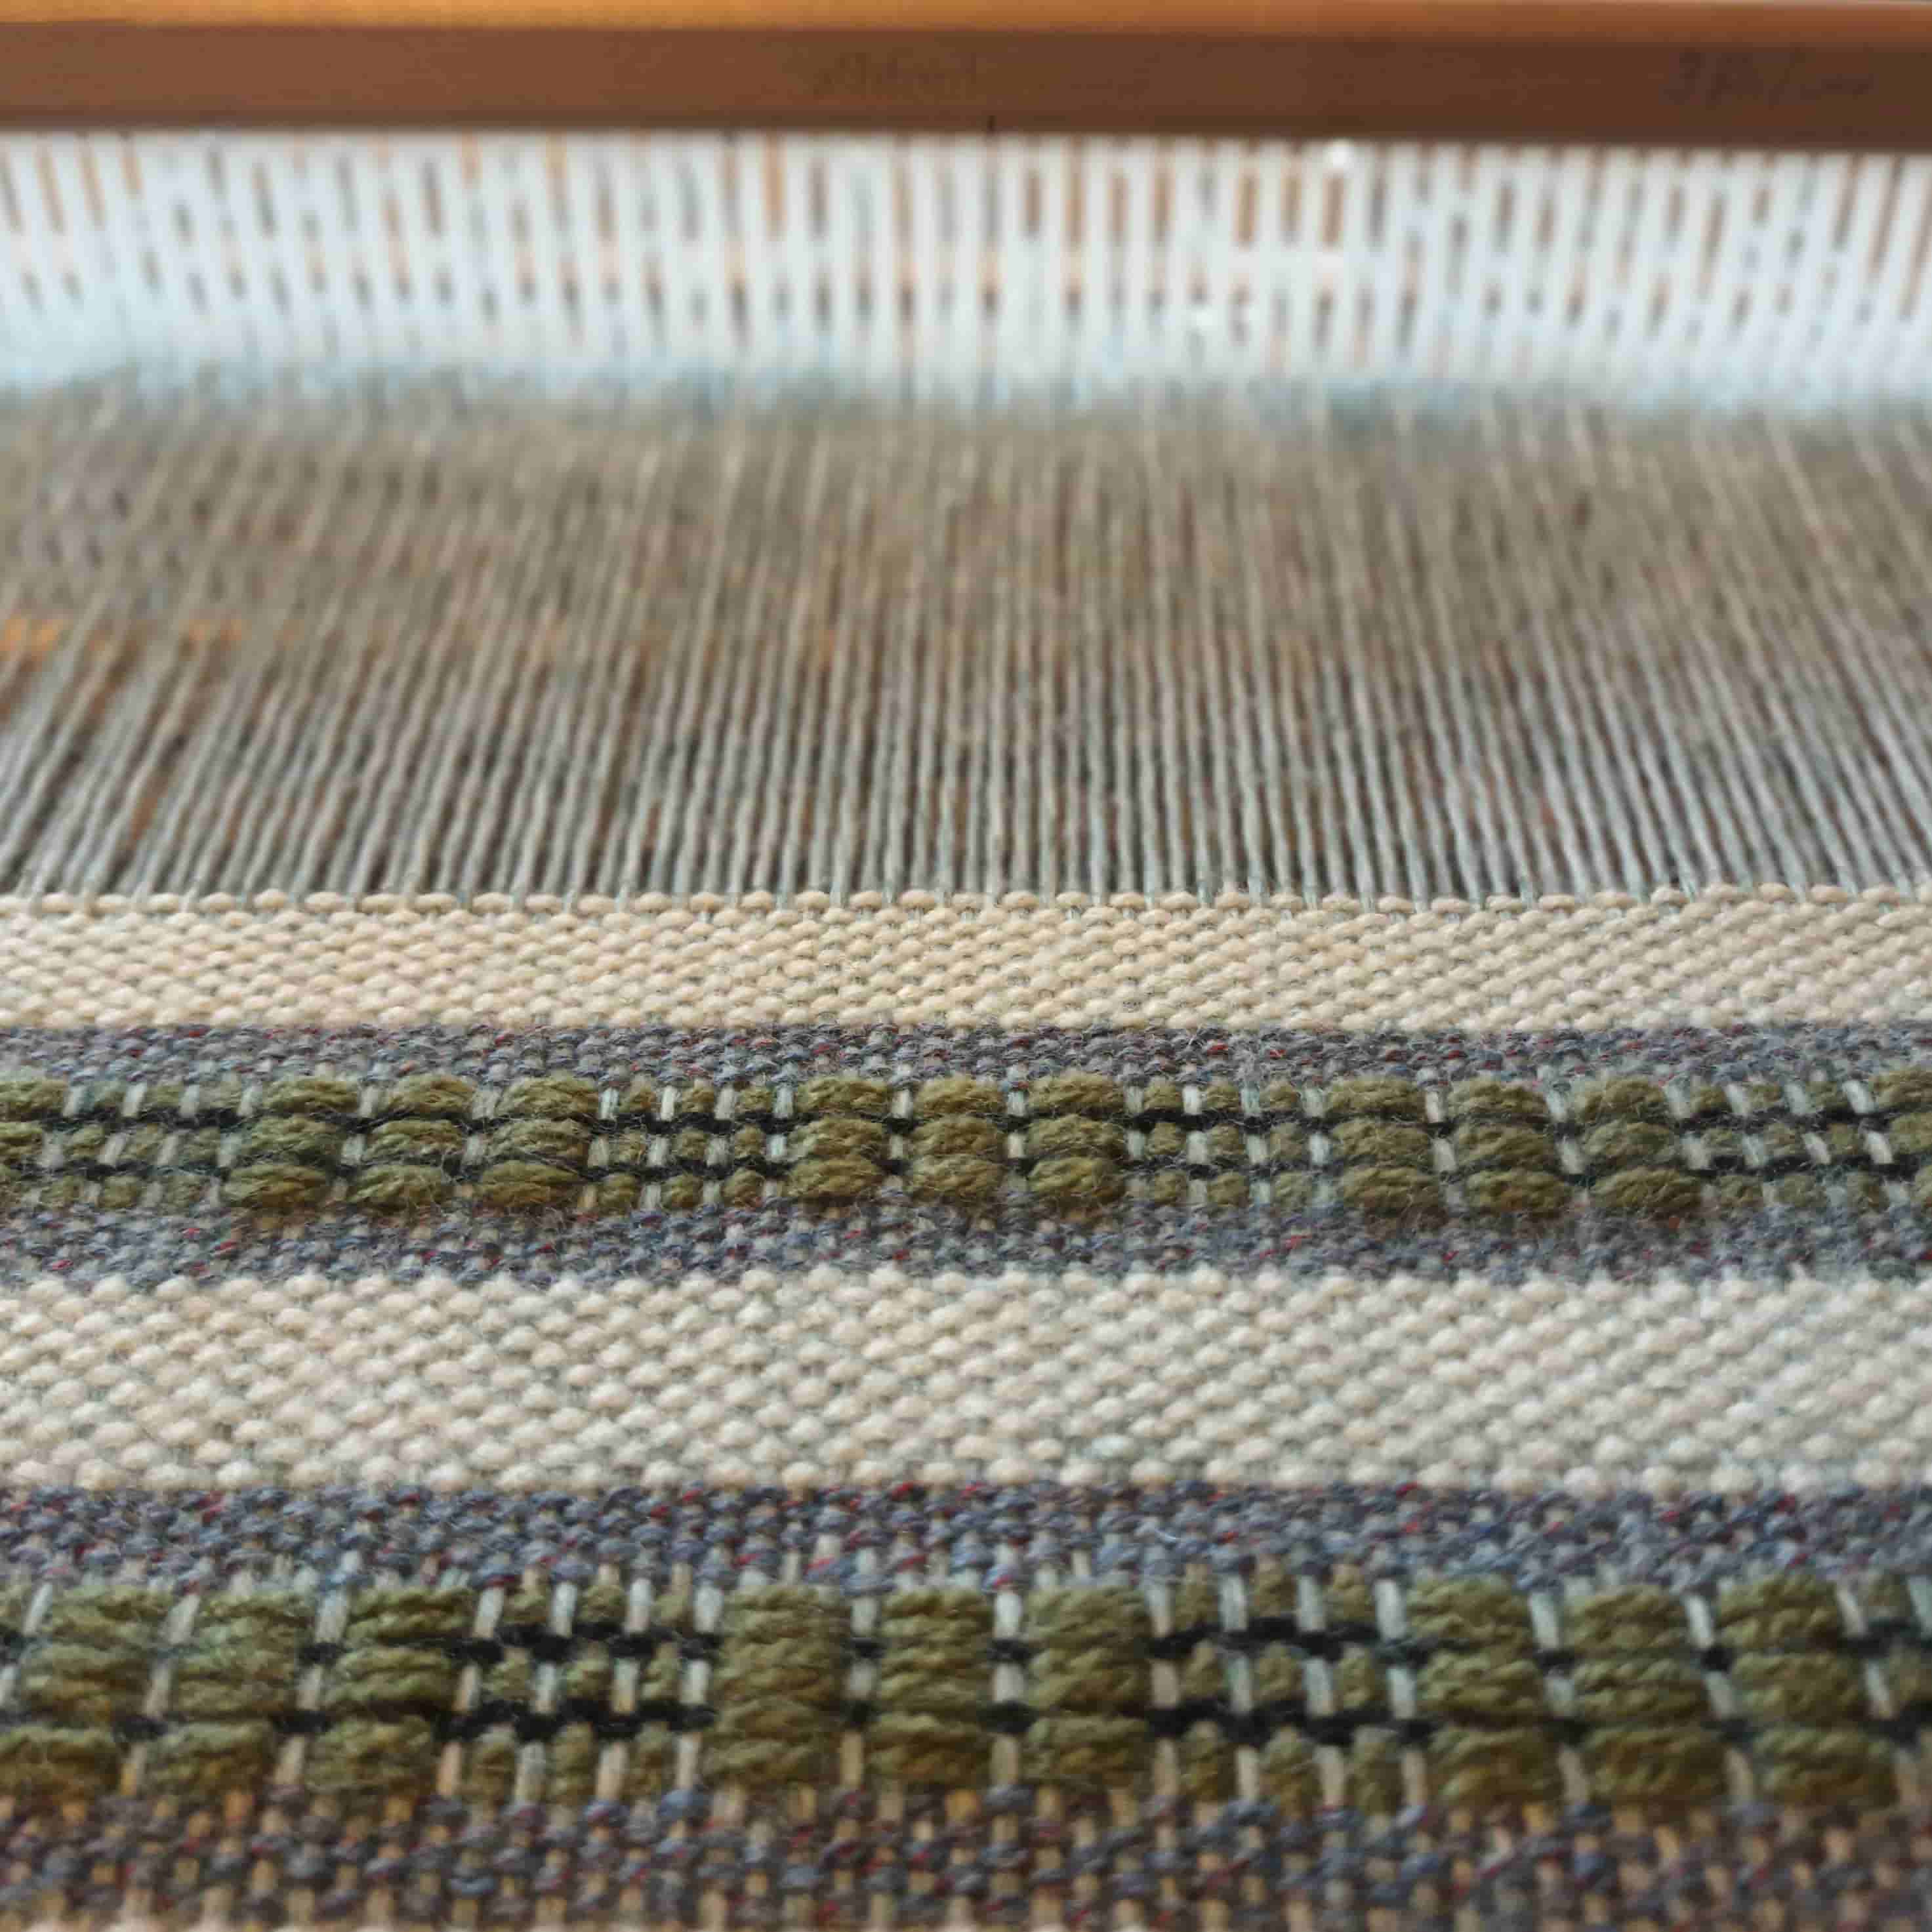 Flottés de trame obtenus avec ramasseur sur chaine en laine - métier à peigne envergeur